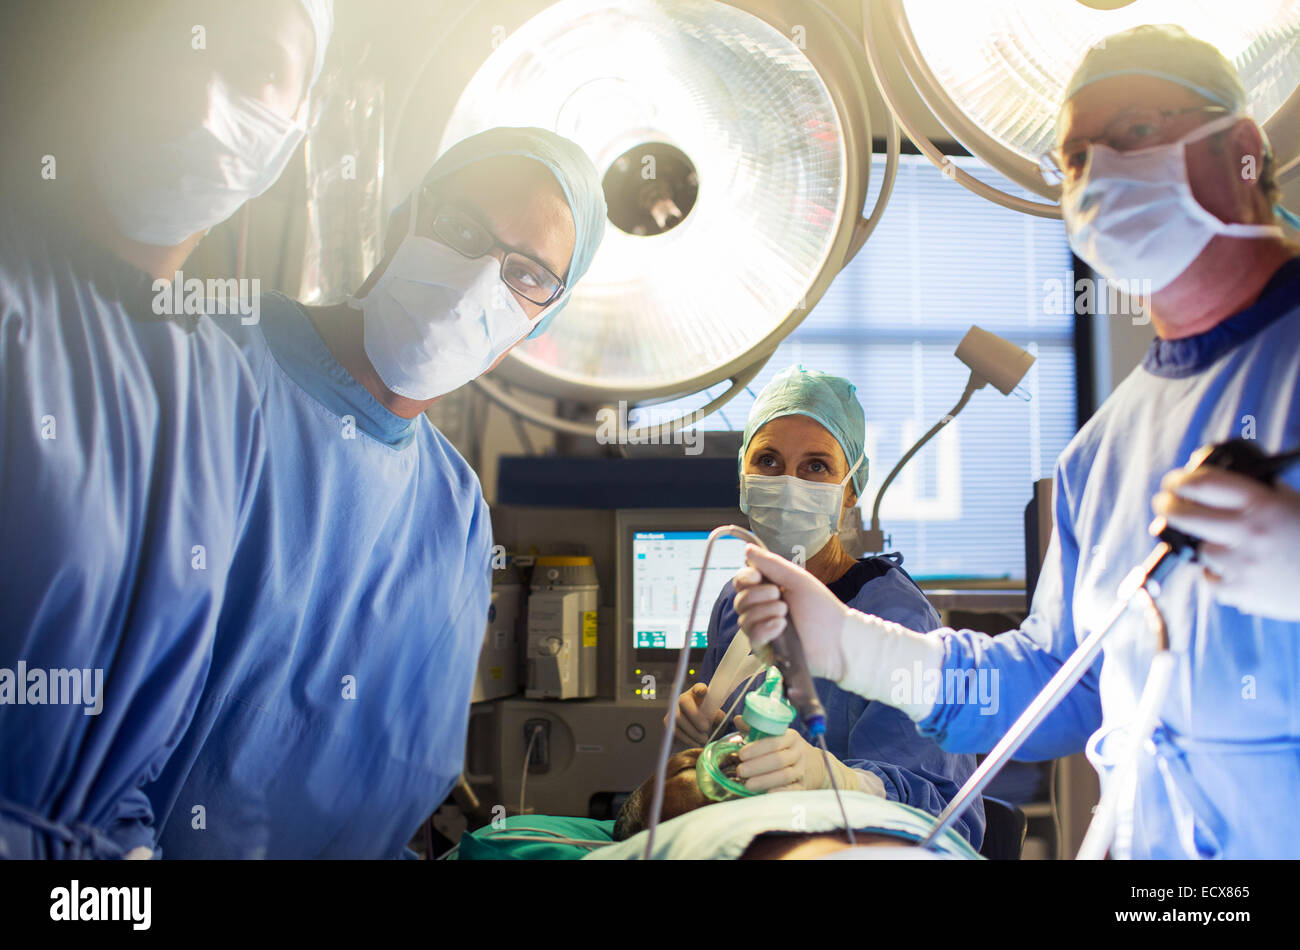 Ärzteteam der laparoskopische Chirurgie im Operationssaal Stockfoto